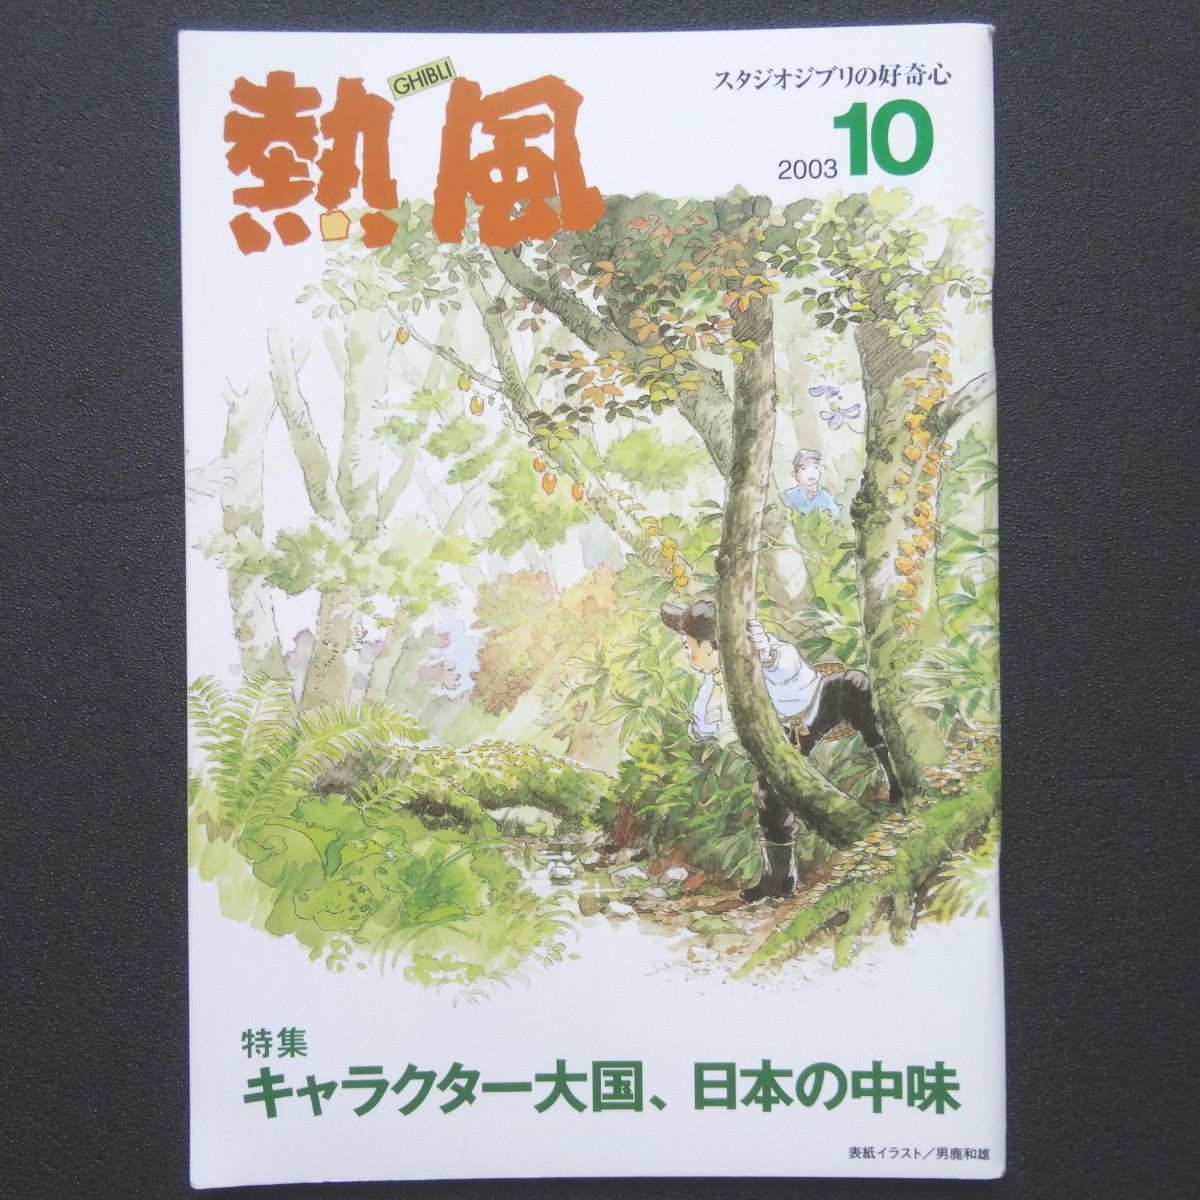 スタジオジブリの好奇心「熱風」 2003年10月号 キャラクター大国、日本の中味